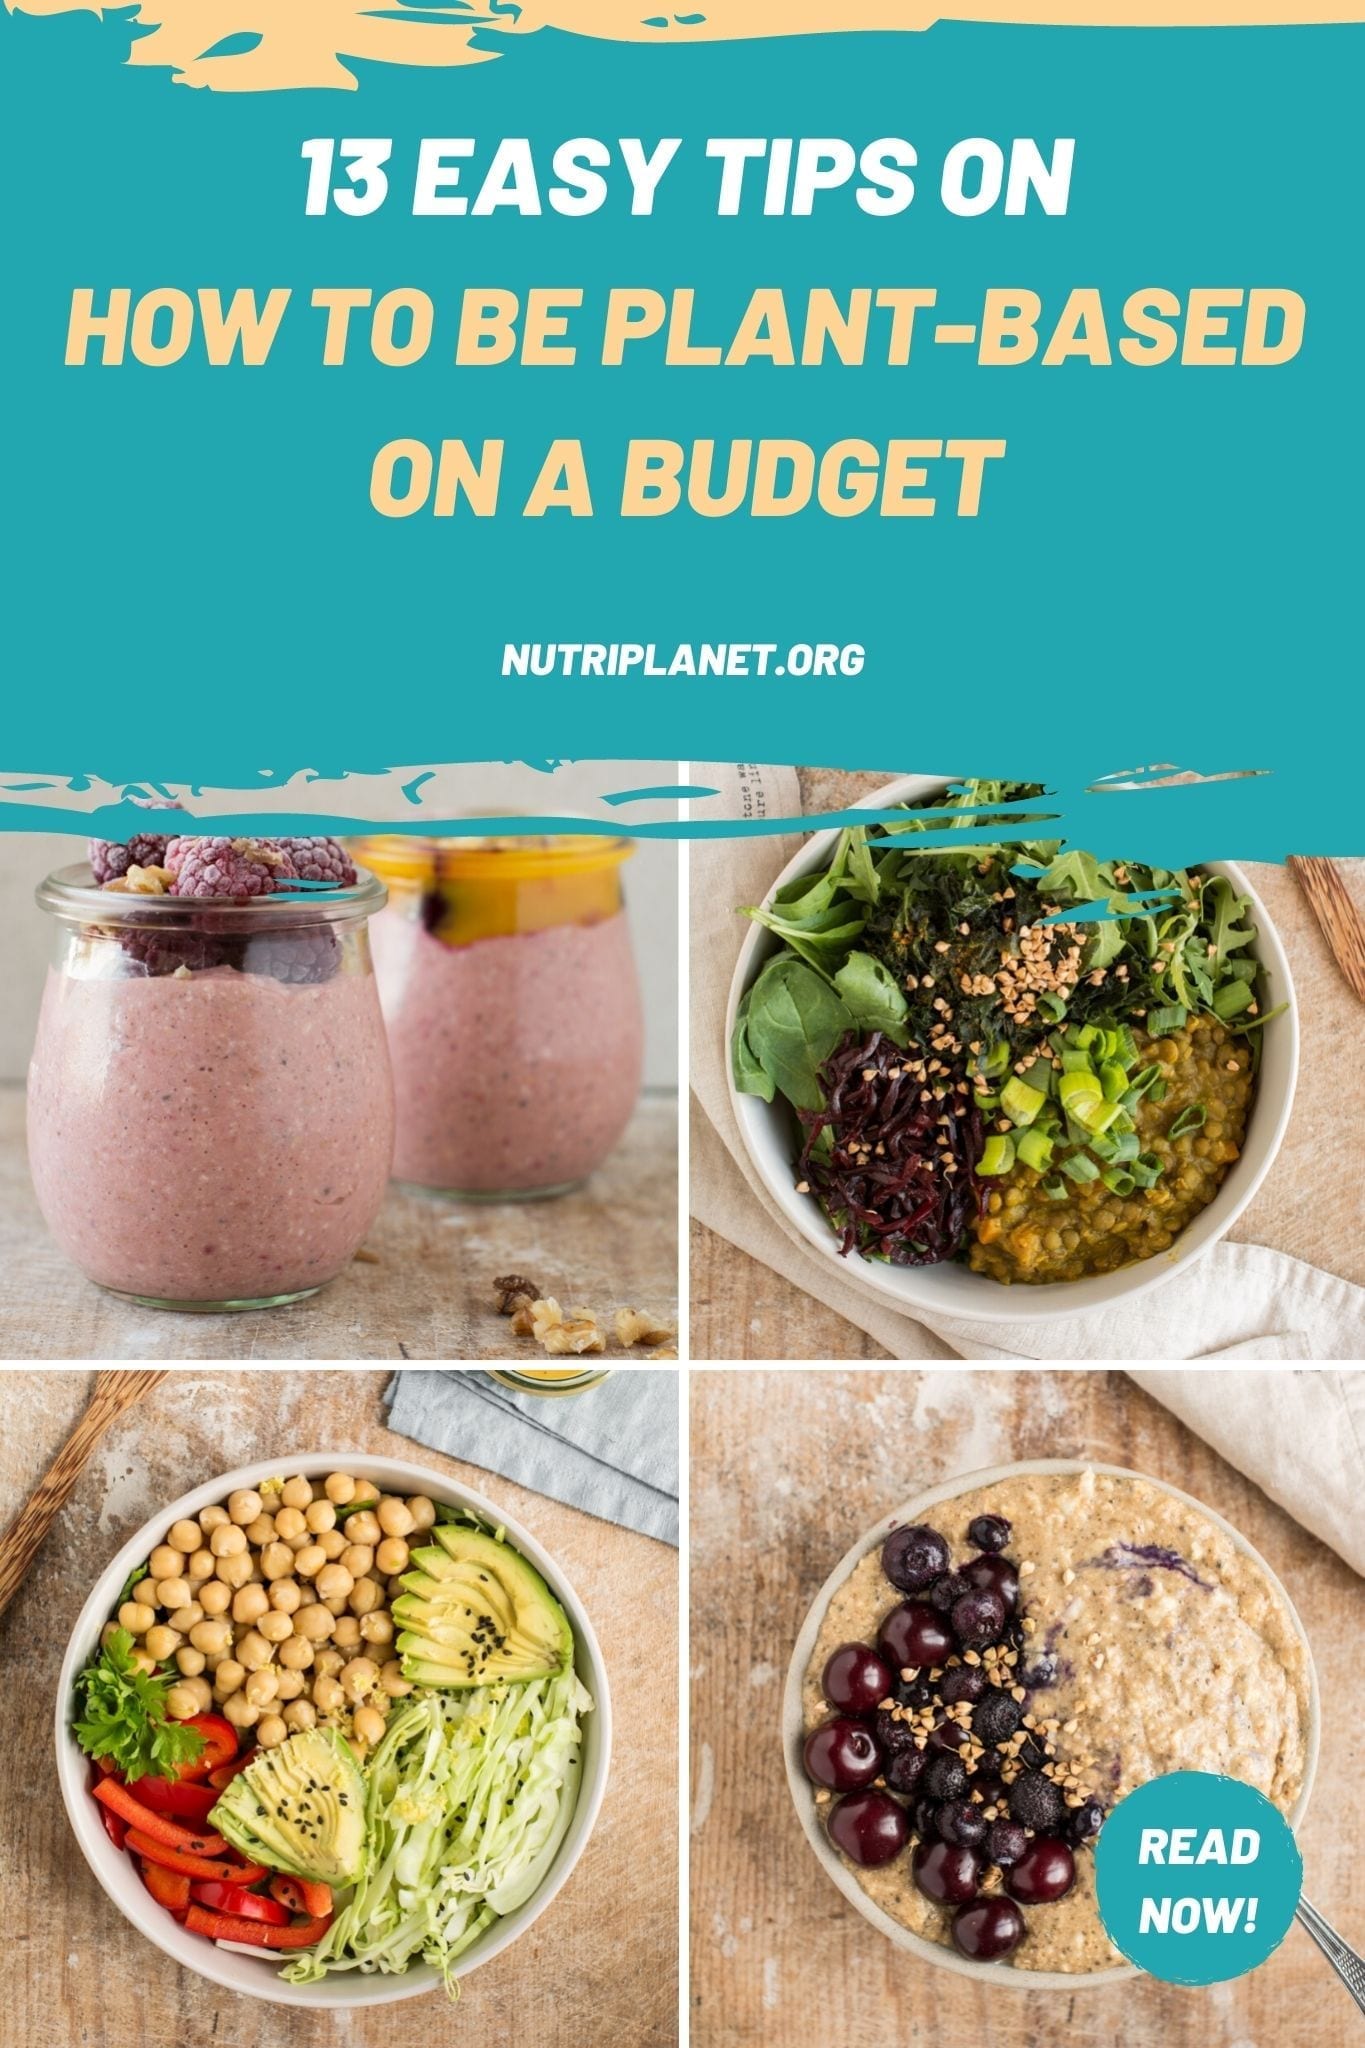 13 consejos sencillos para llevar una dieta basada en plantas con un presupuesto ¡Un estilo de vida saludable y sostenible no tiene por qué ser caro!
